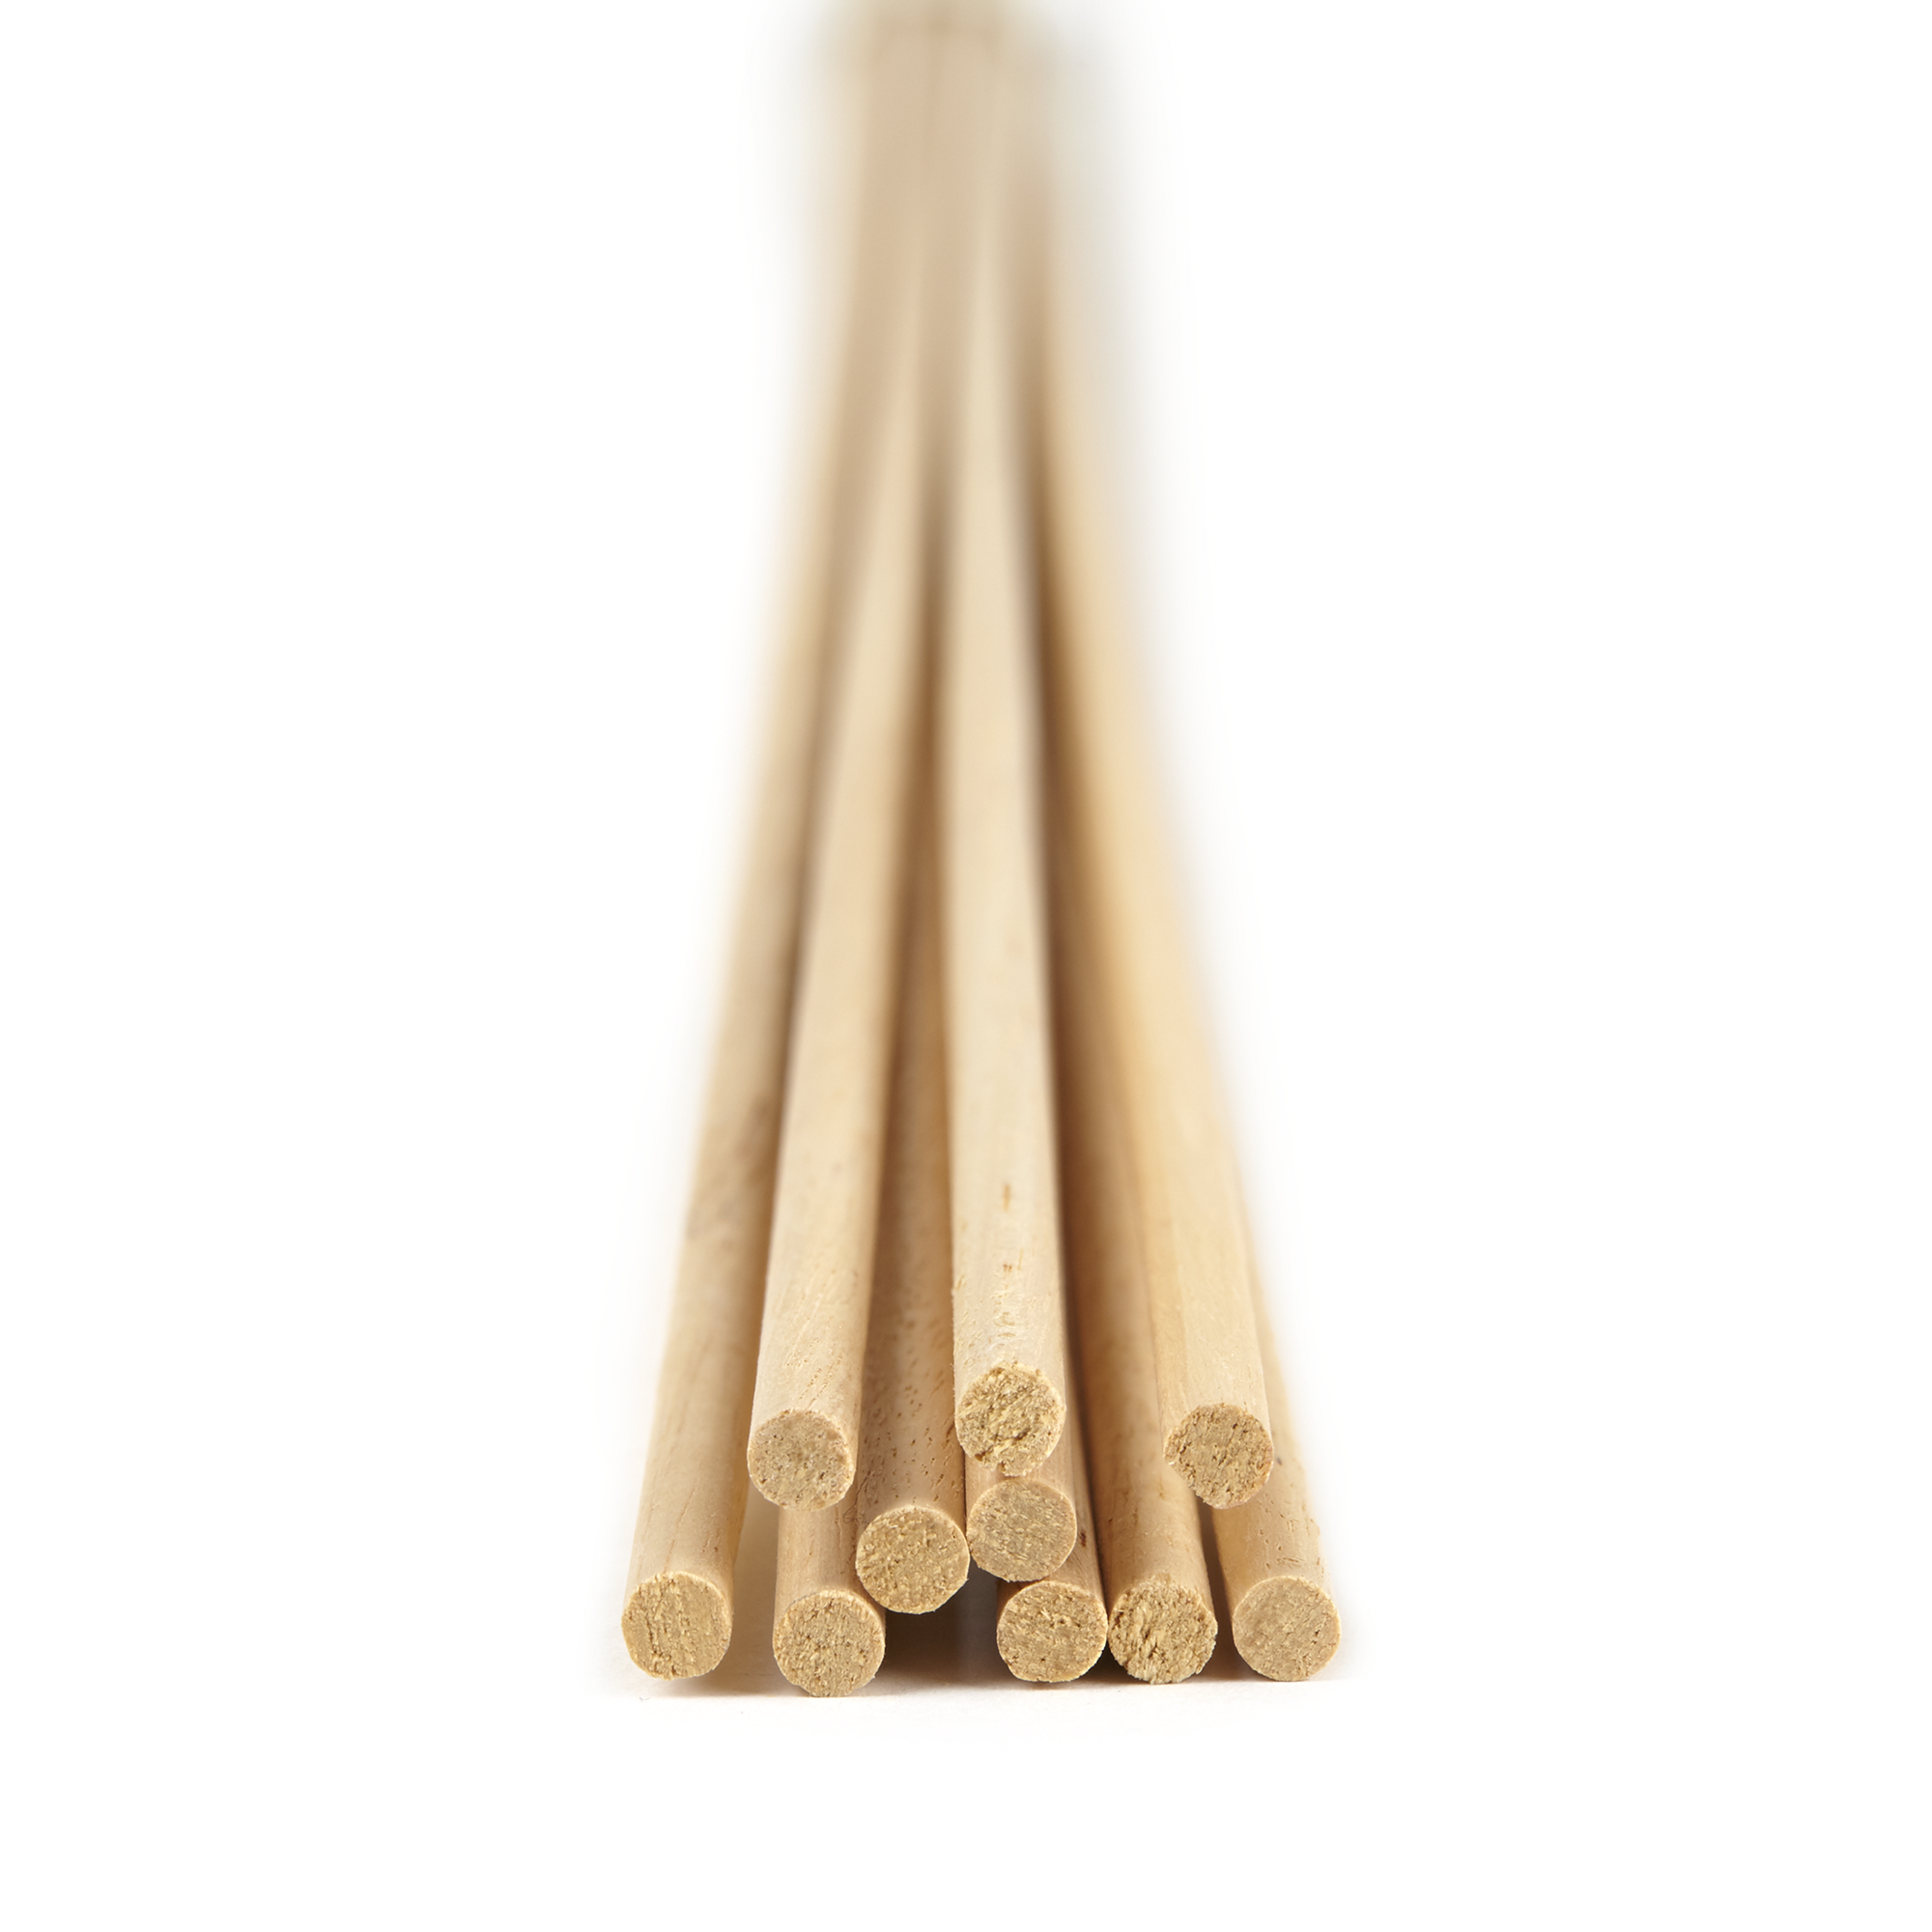 Pack 10/20/50 Balsa Wood Dowels Rods Sticks Lightweight Wood